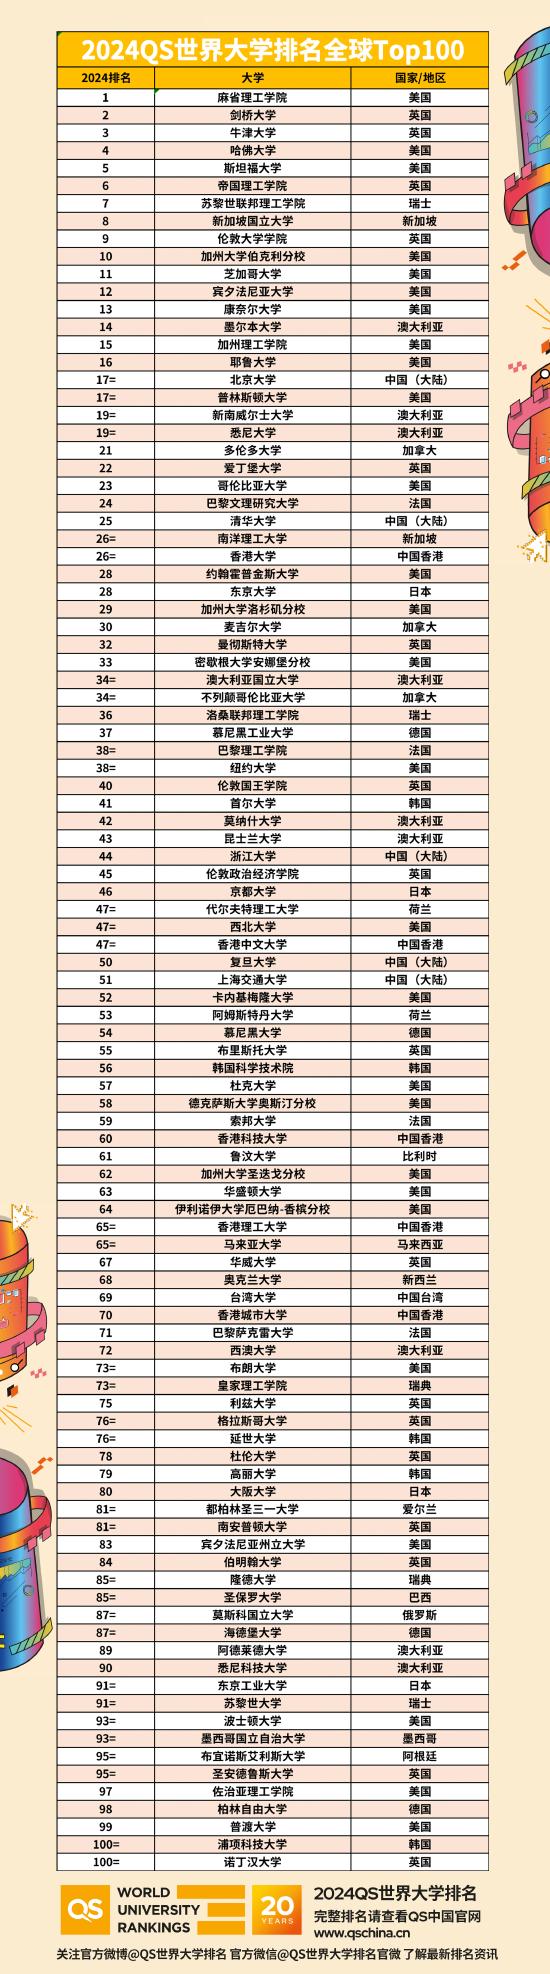 2024qs世界大学排名中国大陆高校入榜名单